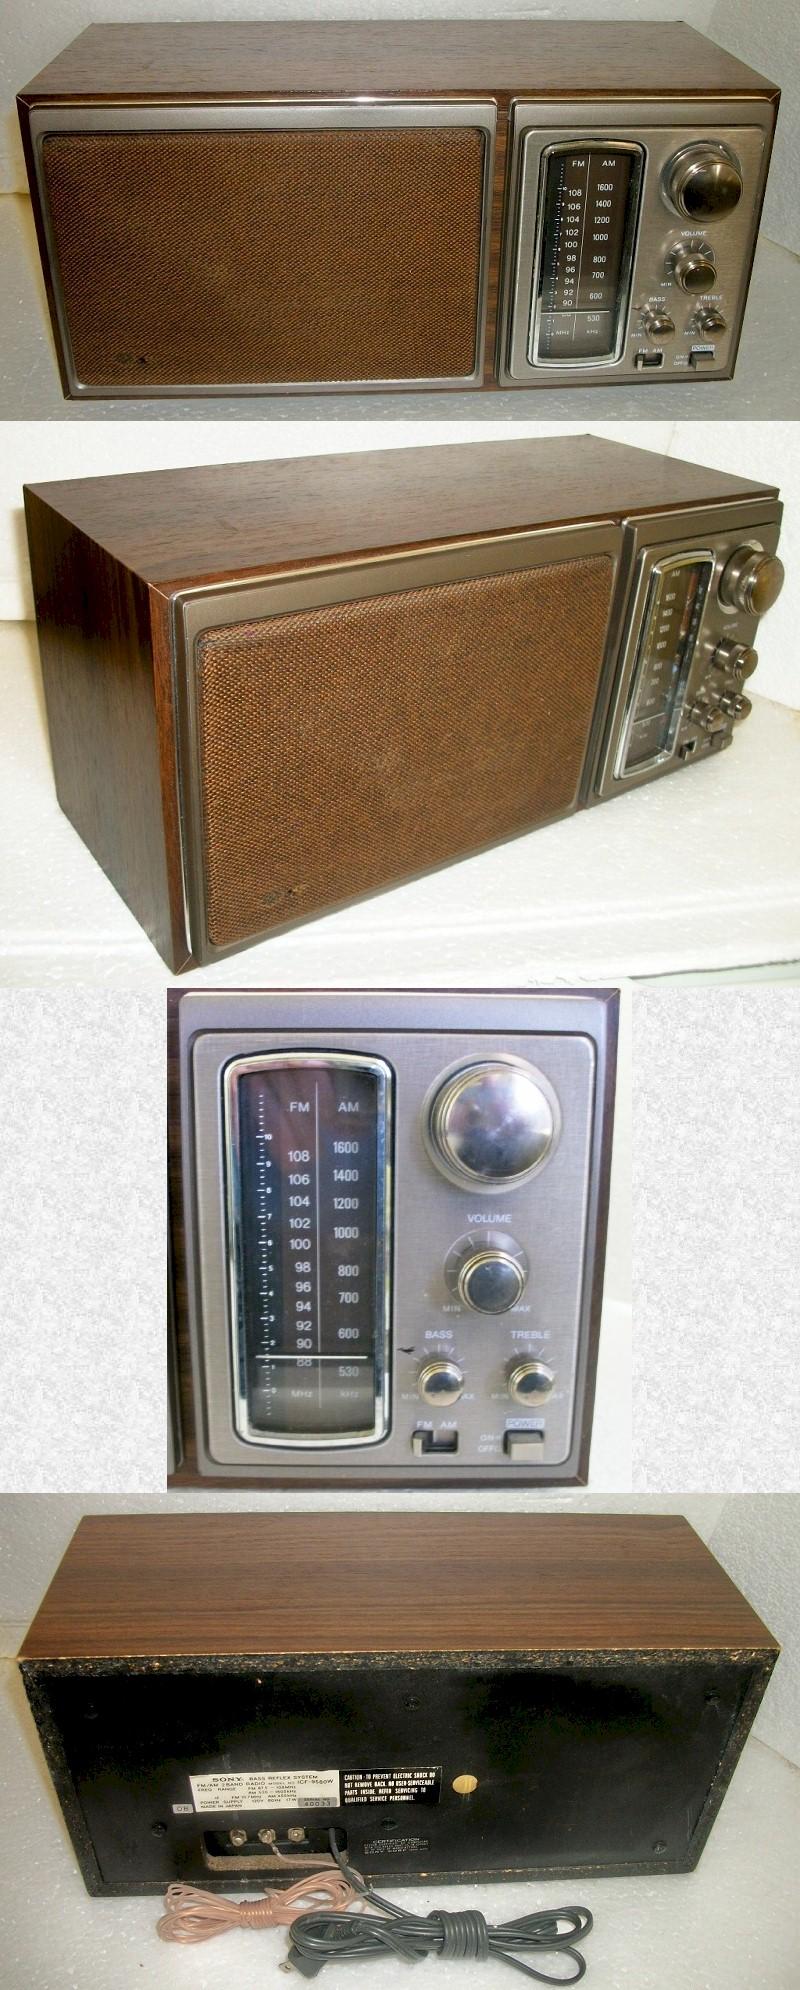 Sony ICF-9580W AM/FM (1970)